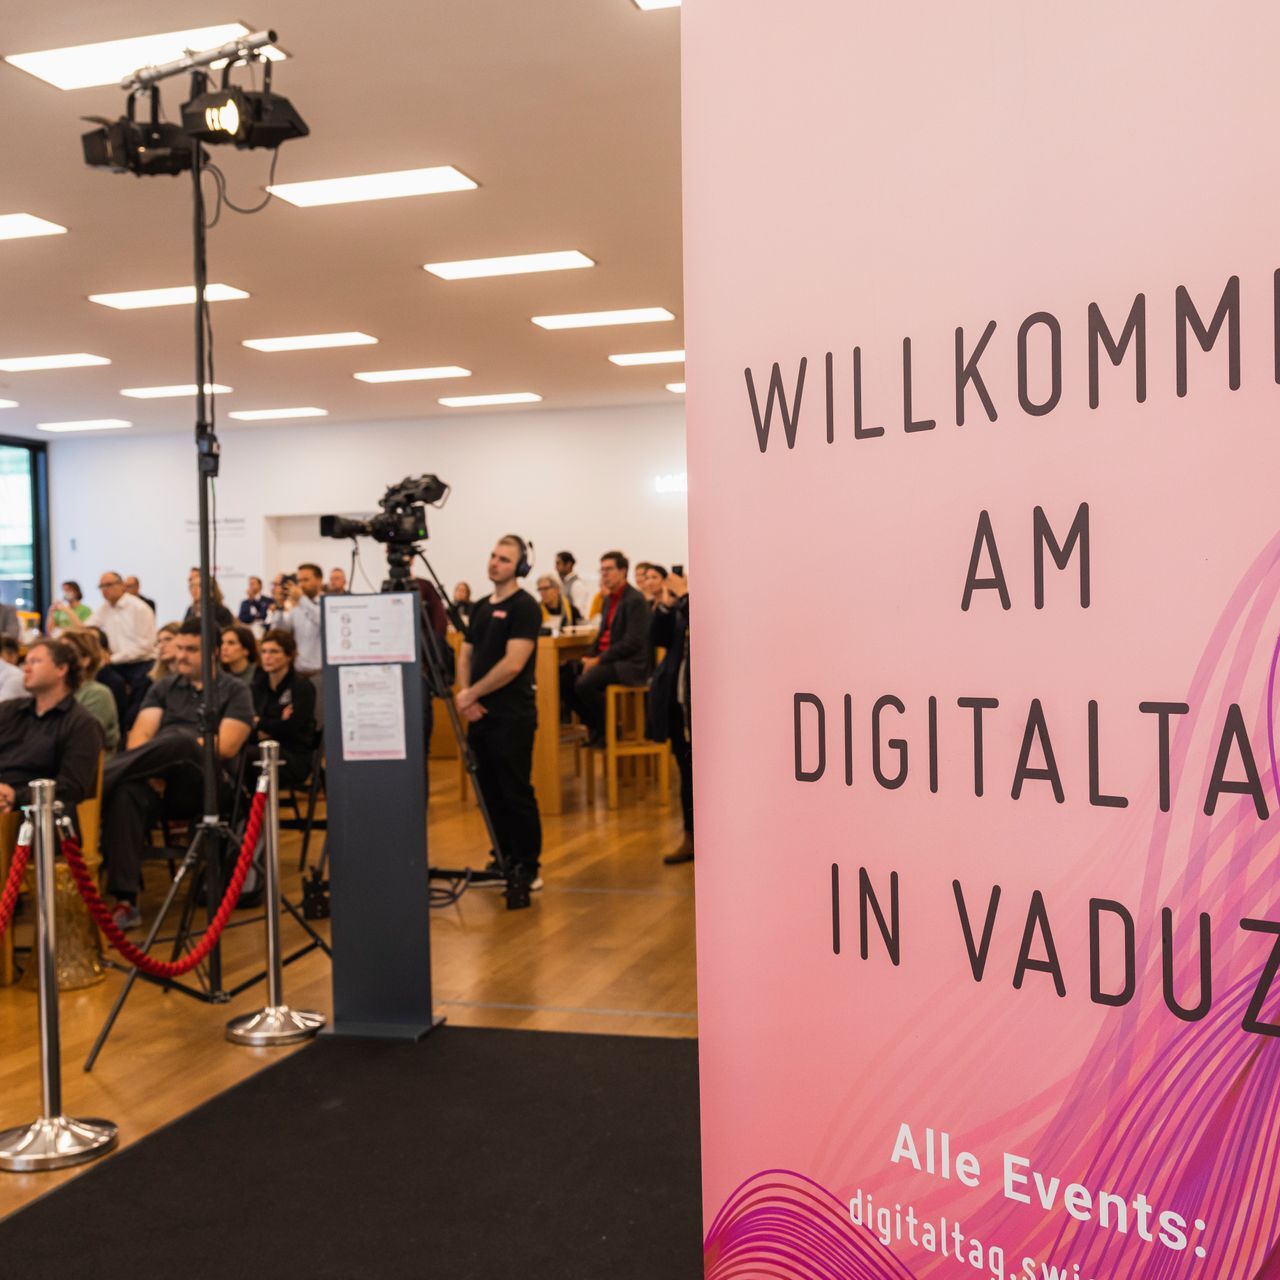 «Digitaltag Vaduz», які сустрэў Музей мастацтваў сталіцы Княства Ліхтэнштэйн у суботу 6 лістапада 2021 г., выклікаў энтузіязм публікі і выступоўцаў па аналогіі з «Digital Day Switzerland» на наступны дзень 10